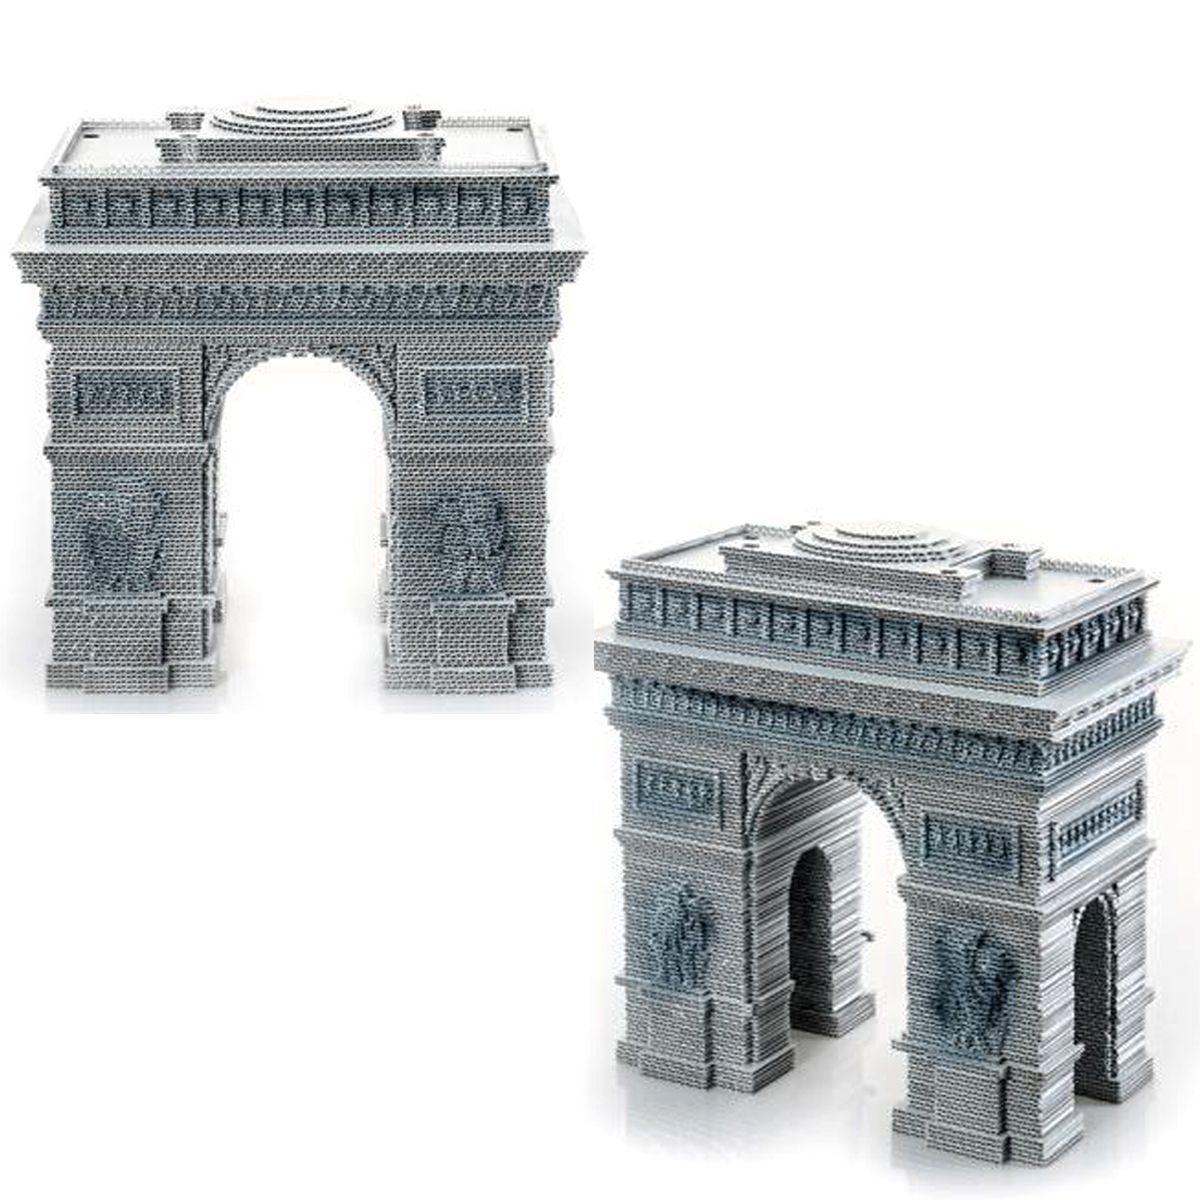 Уцінка.  3D пазл "Тріумфальна арка", 277 дет надірвана упаковка, всередині специфічний запах деревини